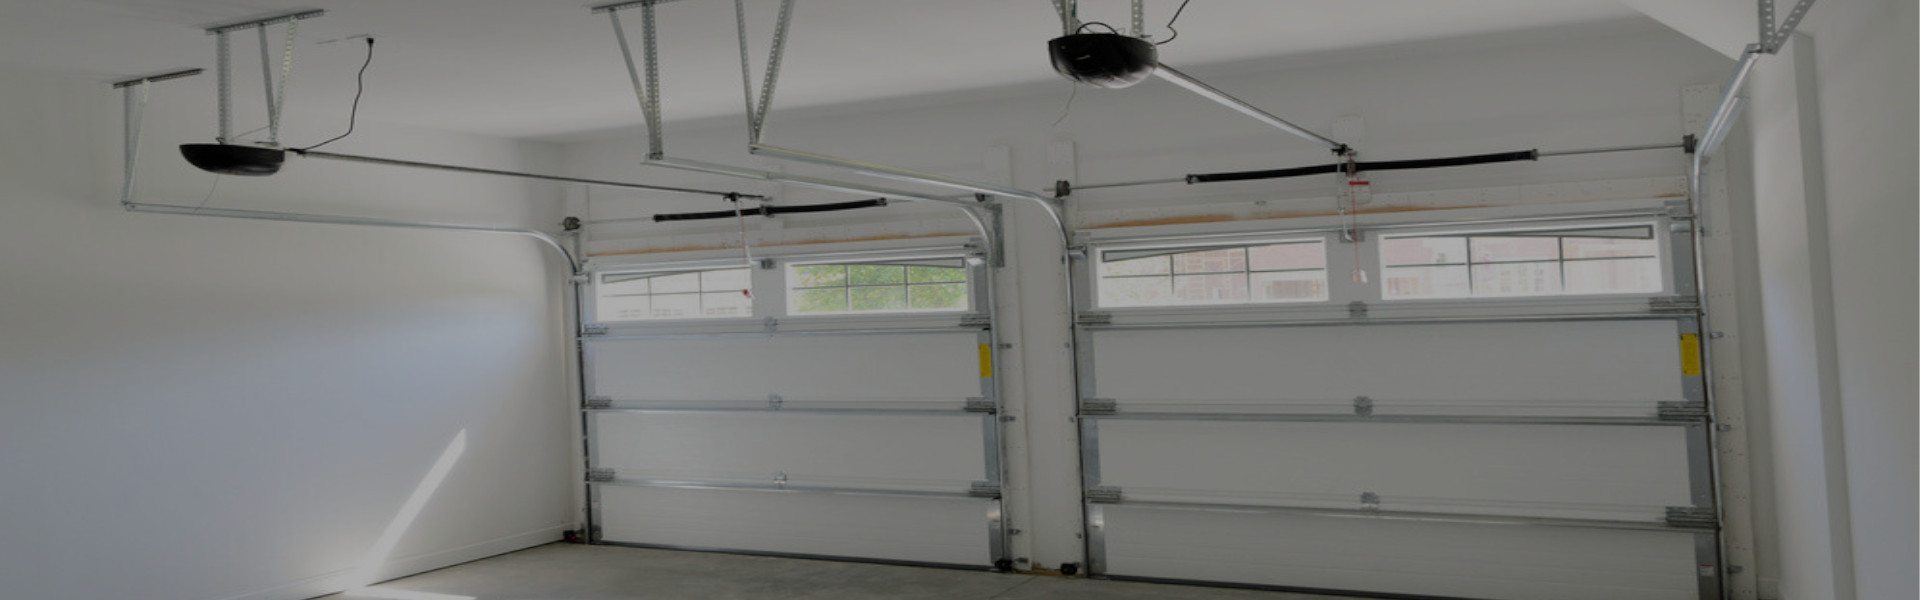 Slider Garage Door Repair, Glaziers in Thamesmead, SE28